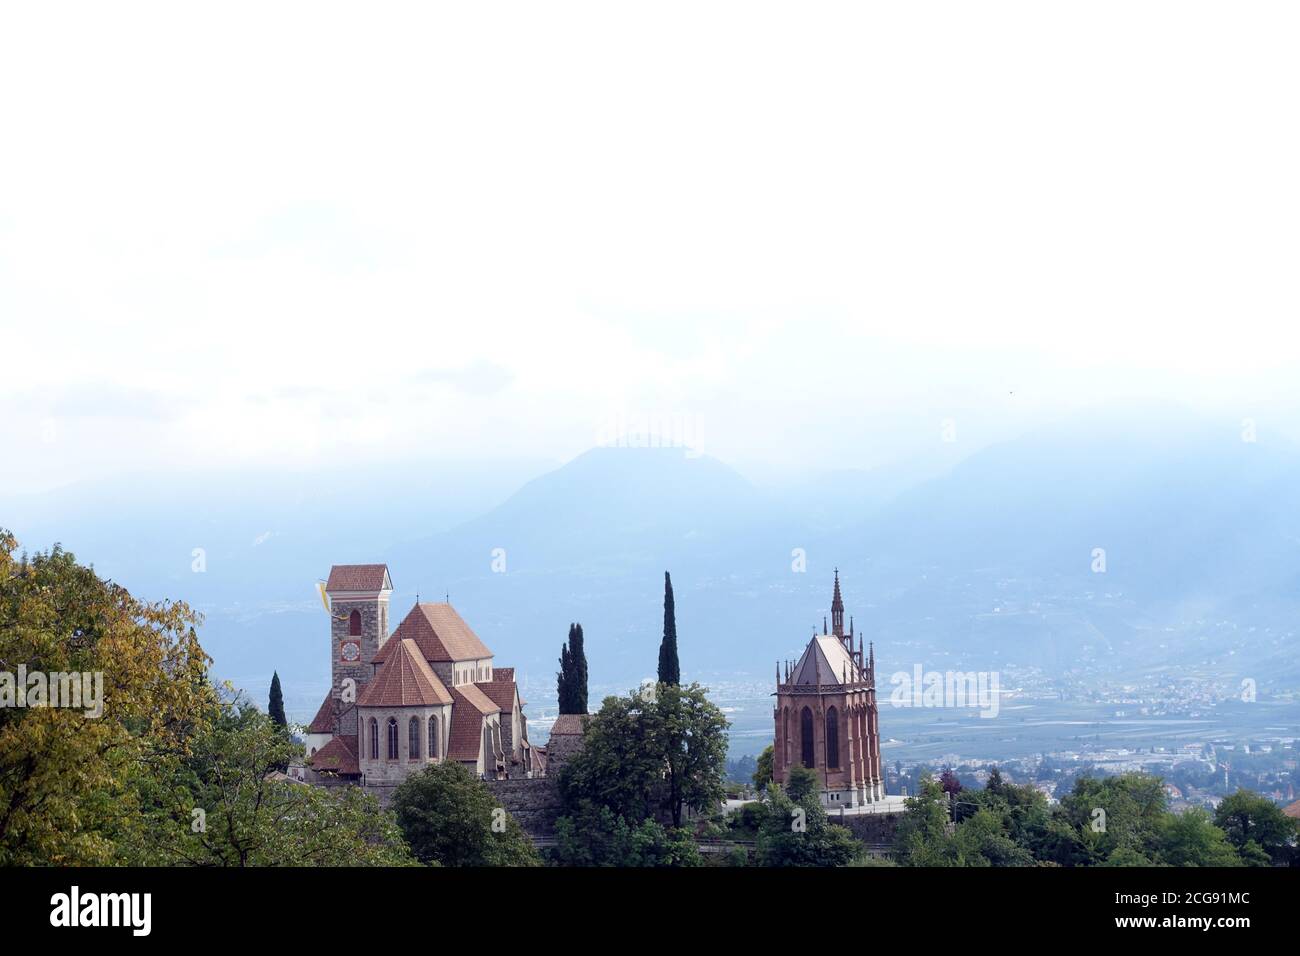 Blick auf Schenna mit Mausoleum von Erzherzog Johann von Österreich und neuer Pfarrkirche St. Maria Himmelfahrt, Südtirol, Italien Stock Photo